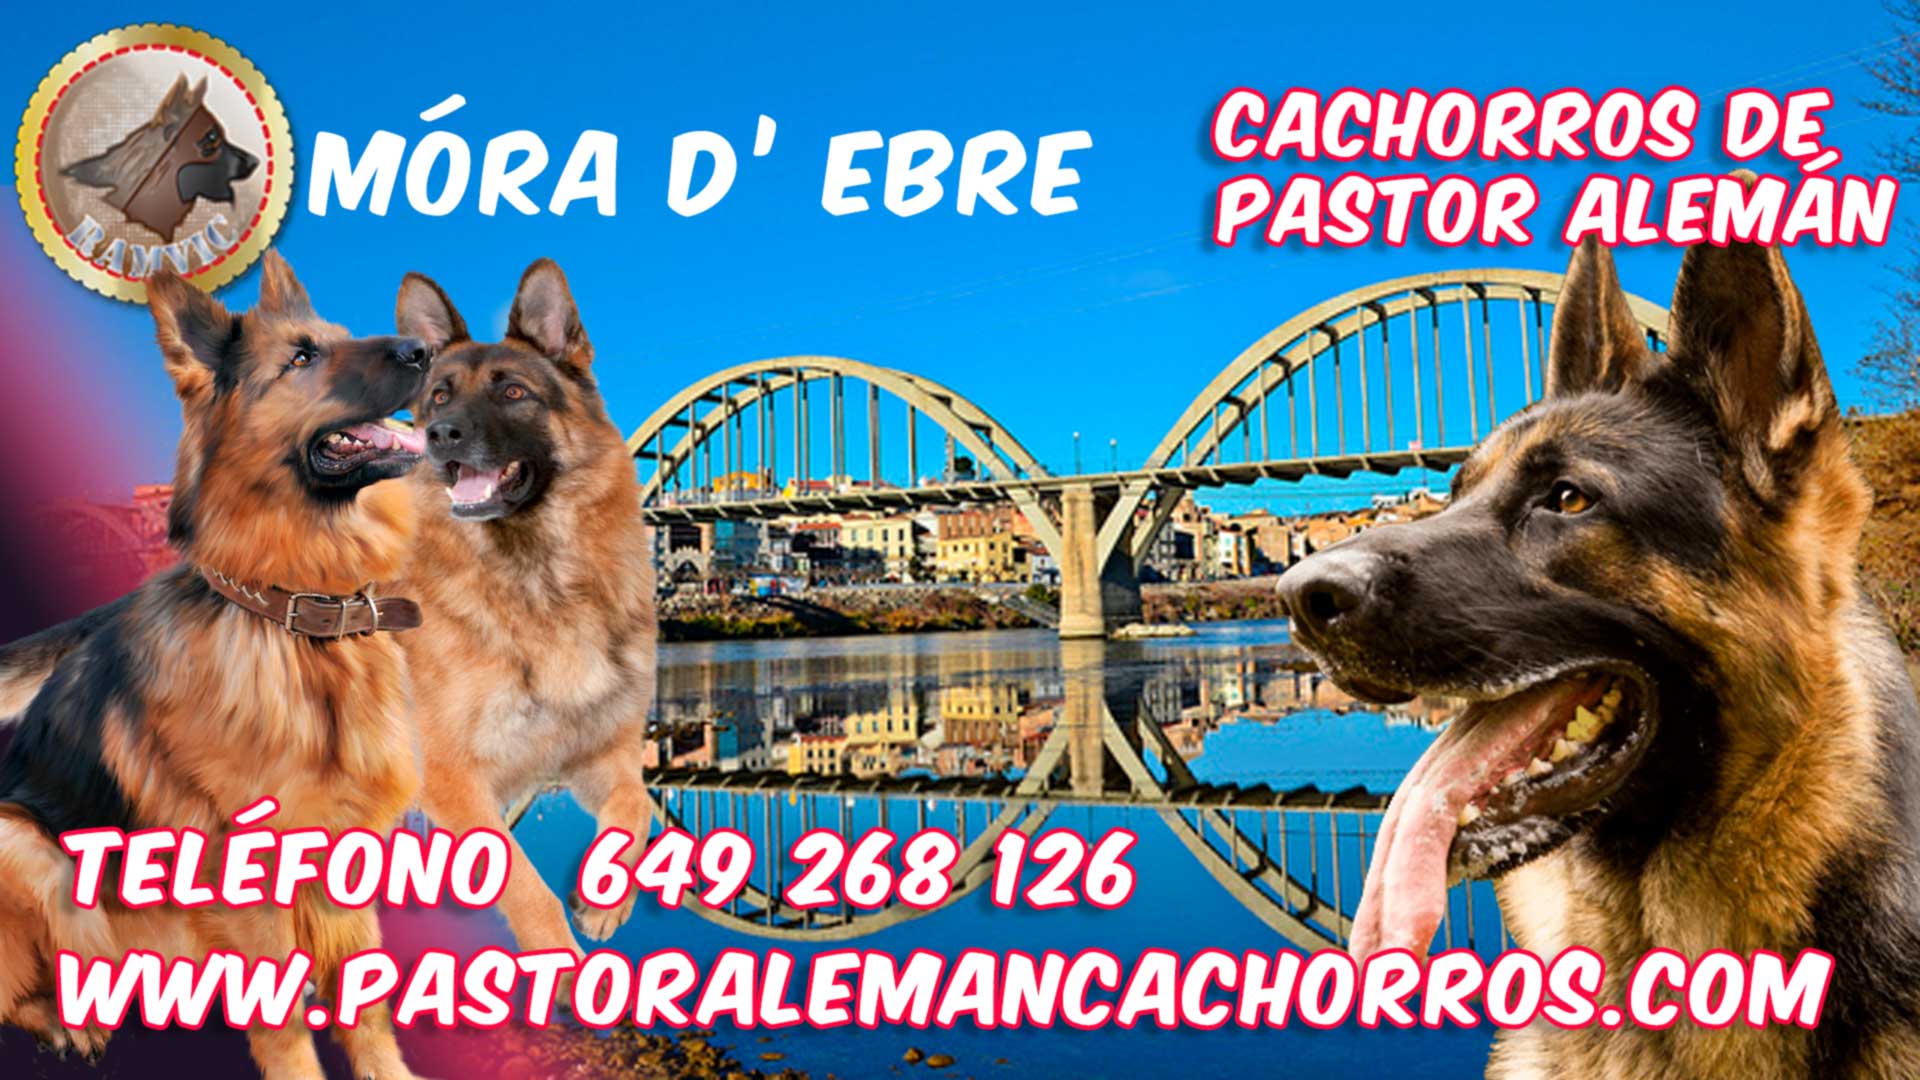 Cachorros de Pastor Alemán en Mora de Ebro